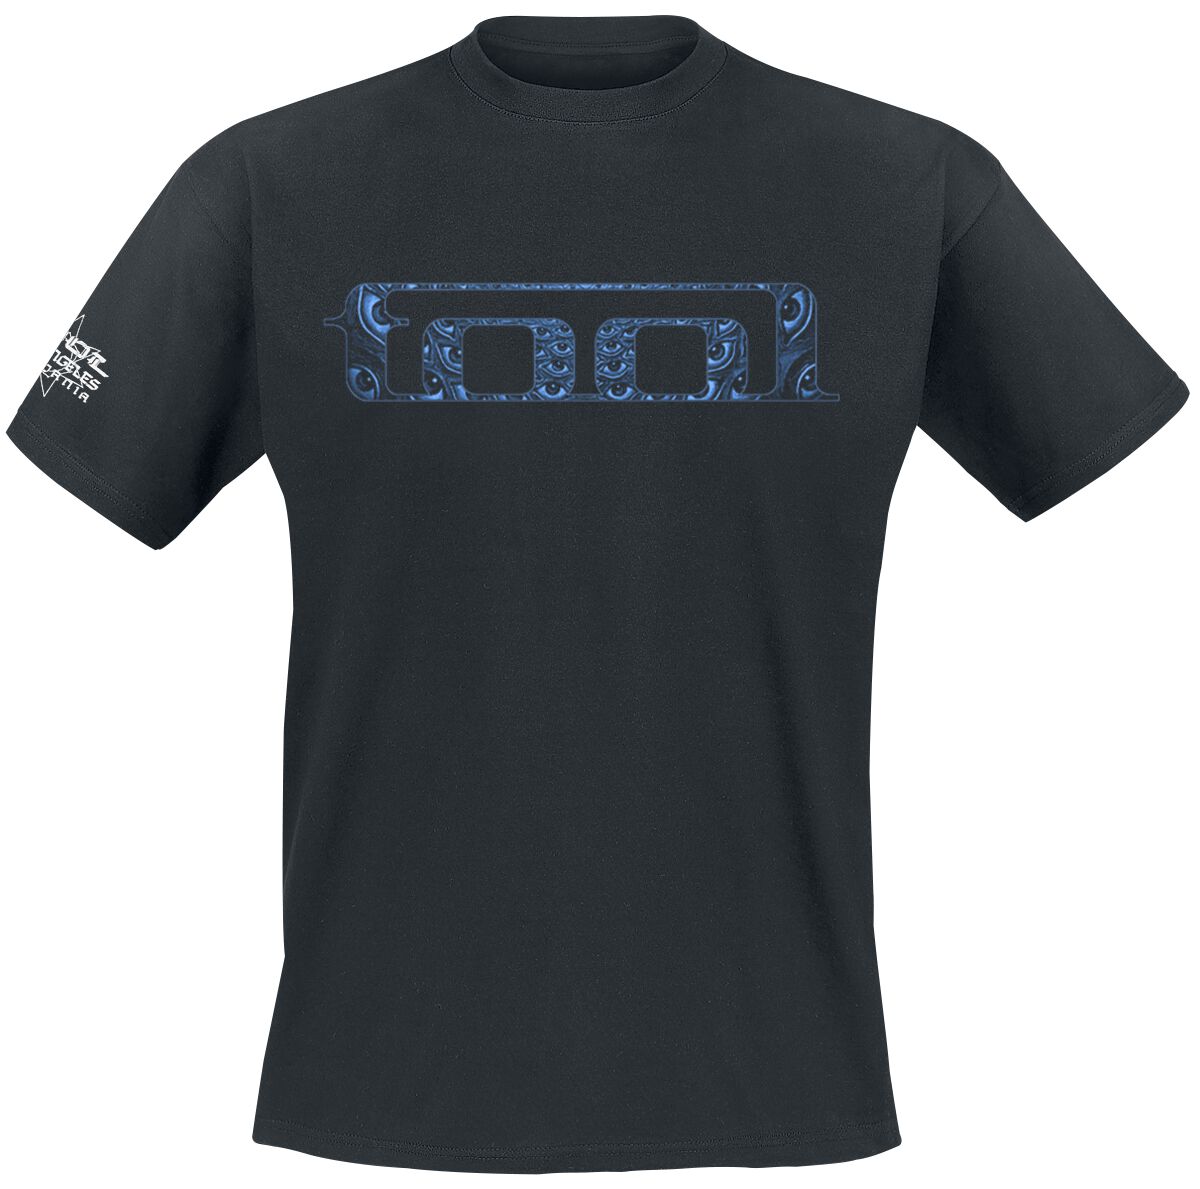 Tool T-Shirt - Blue Spectre - S bis XXL - für Männer - Größe XL - schwarz  - Lizenziertes Merchandise!